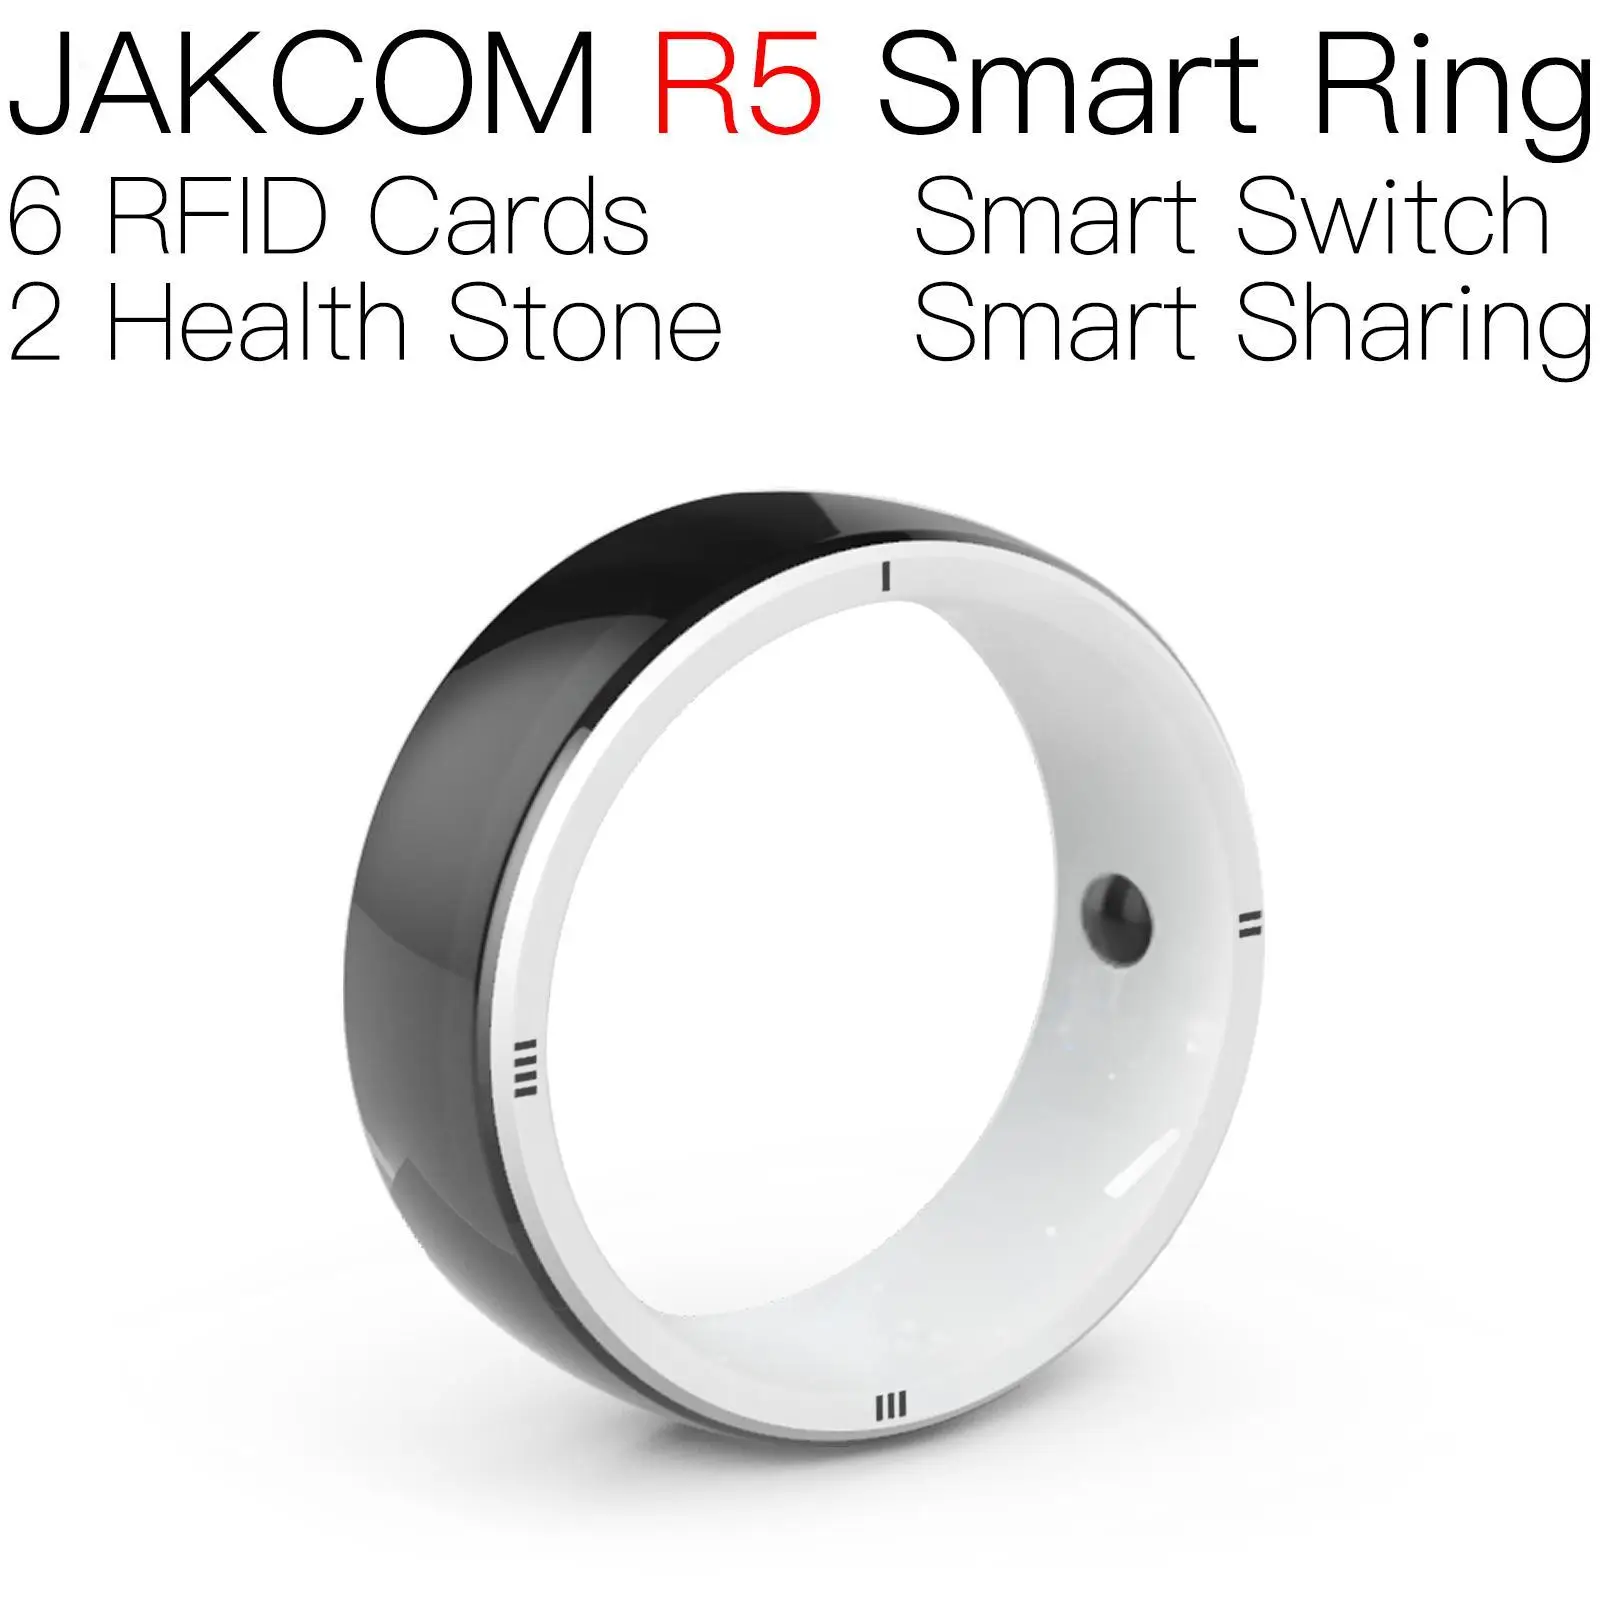 

JAKCOM R5 Smart Ring better than 125khz rfid writter nfc complete ip tv 12 months wristband printer long distance reader tags